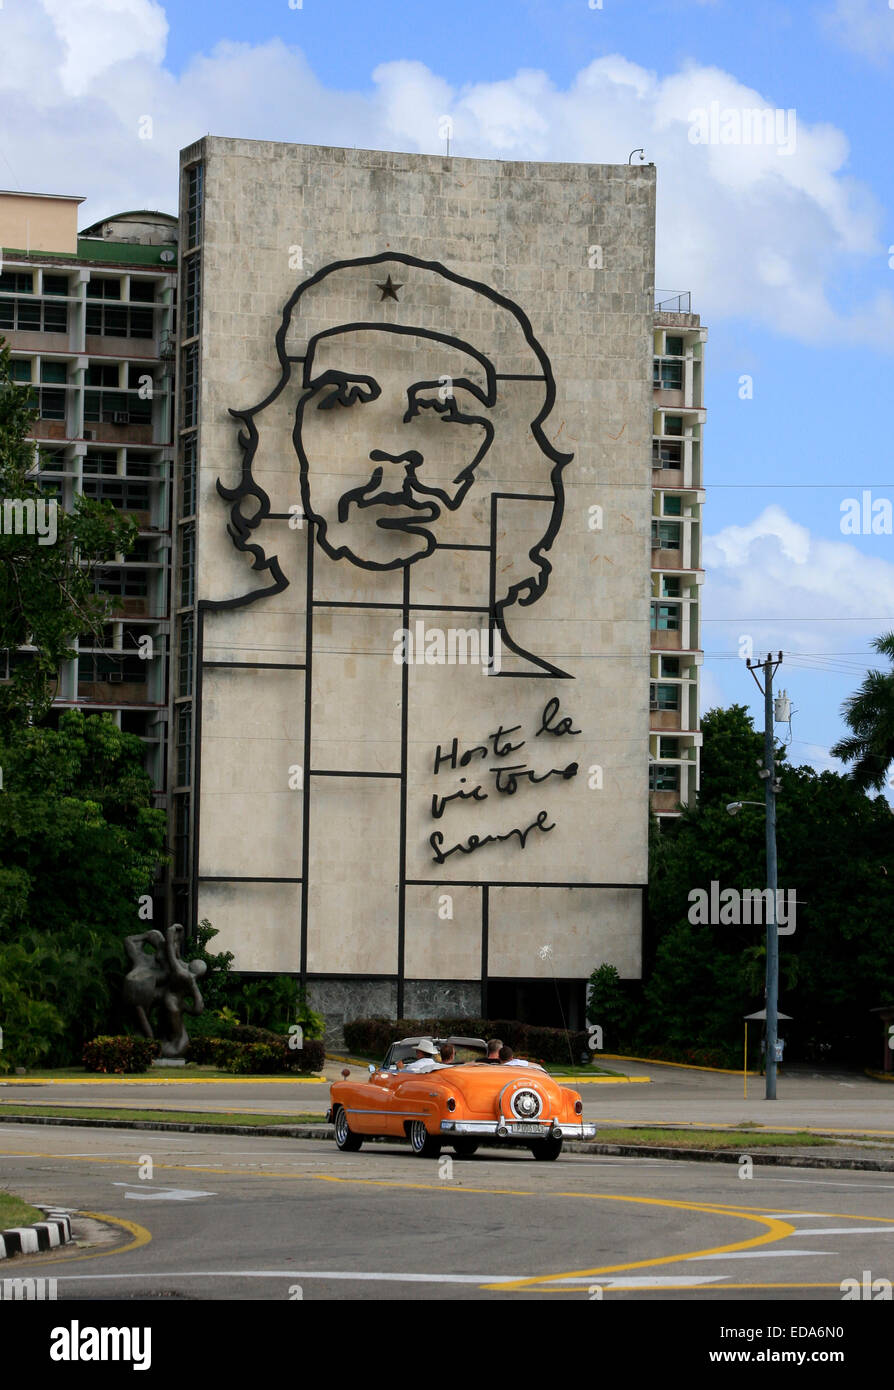 Vieille voiture américaine Buick roulant en face de l'immeuble du ministère de l'intérieur sur la Plaza de la Revolucion, La Havane, Cuba Banque D'Images